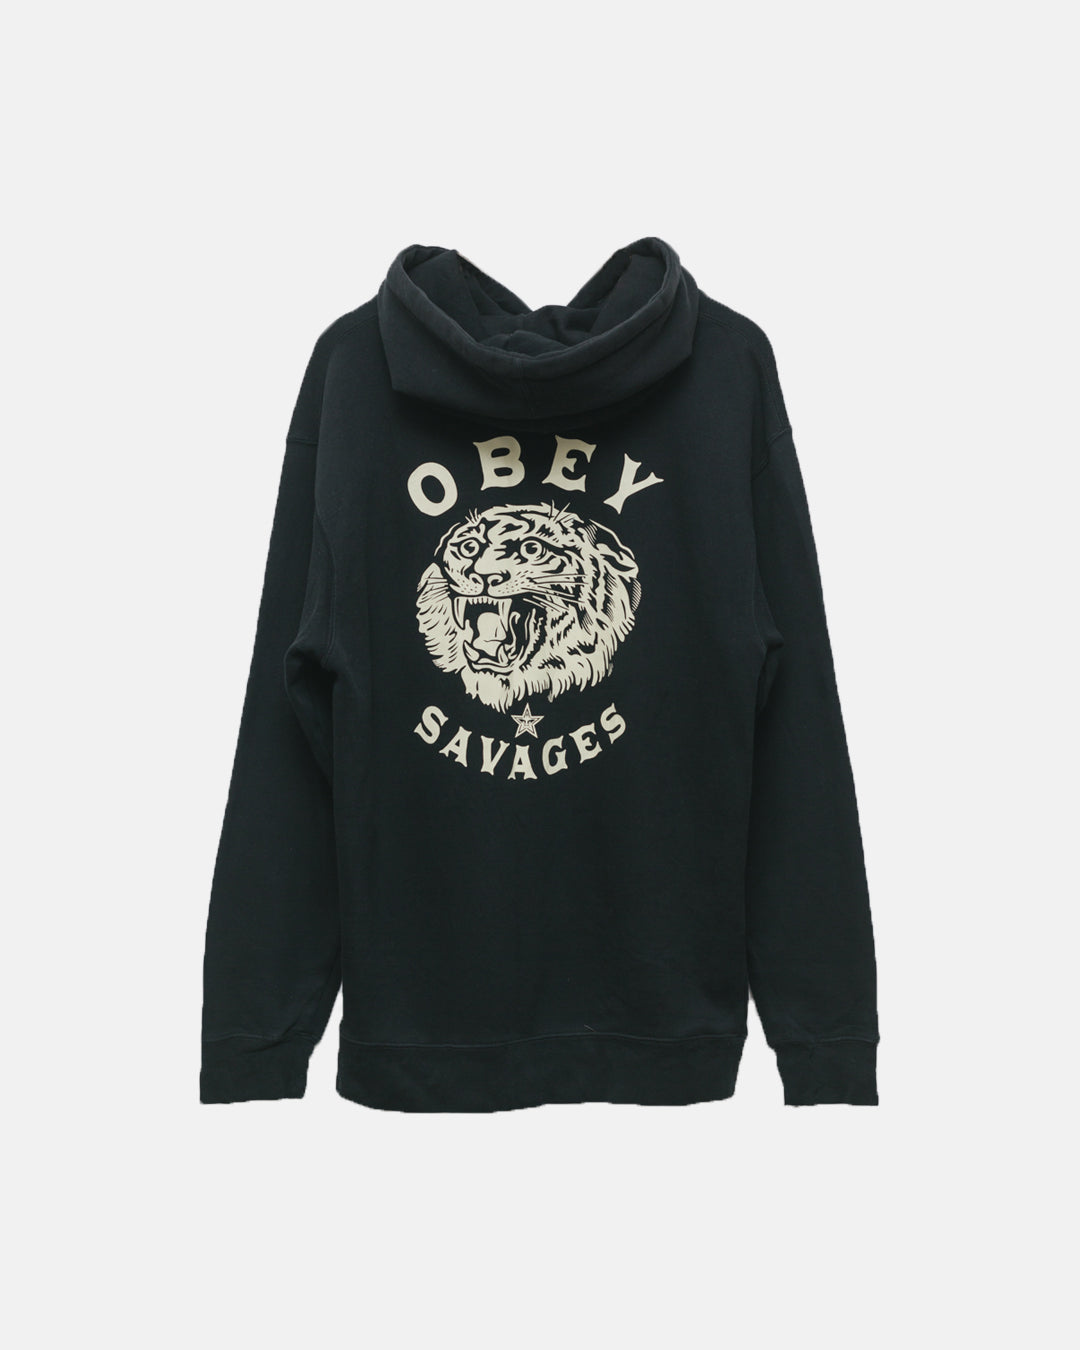 Obey savages logo back hoodie